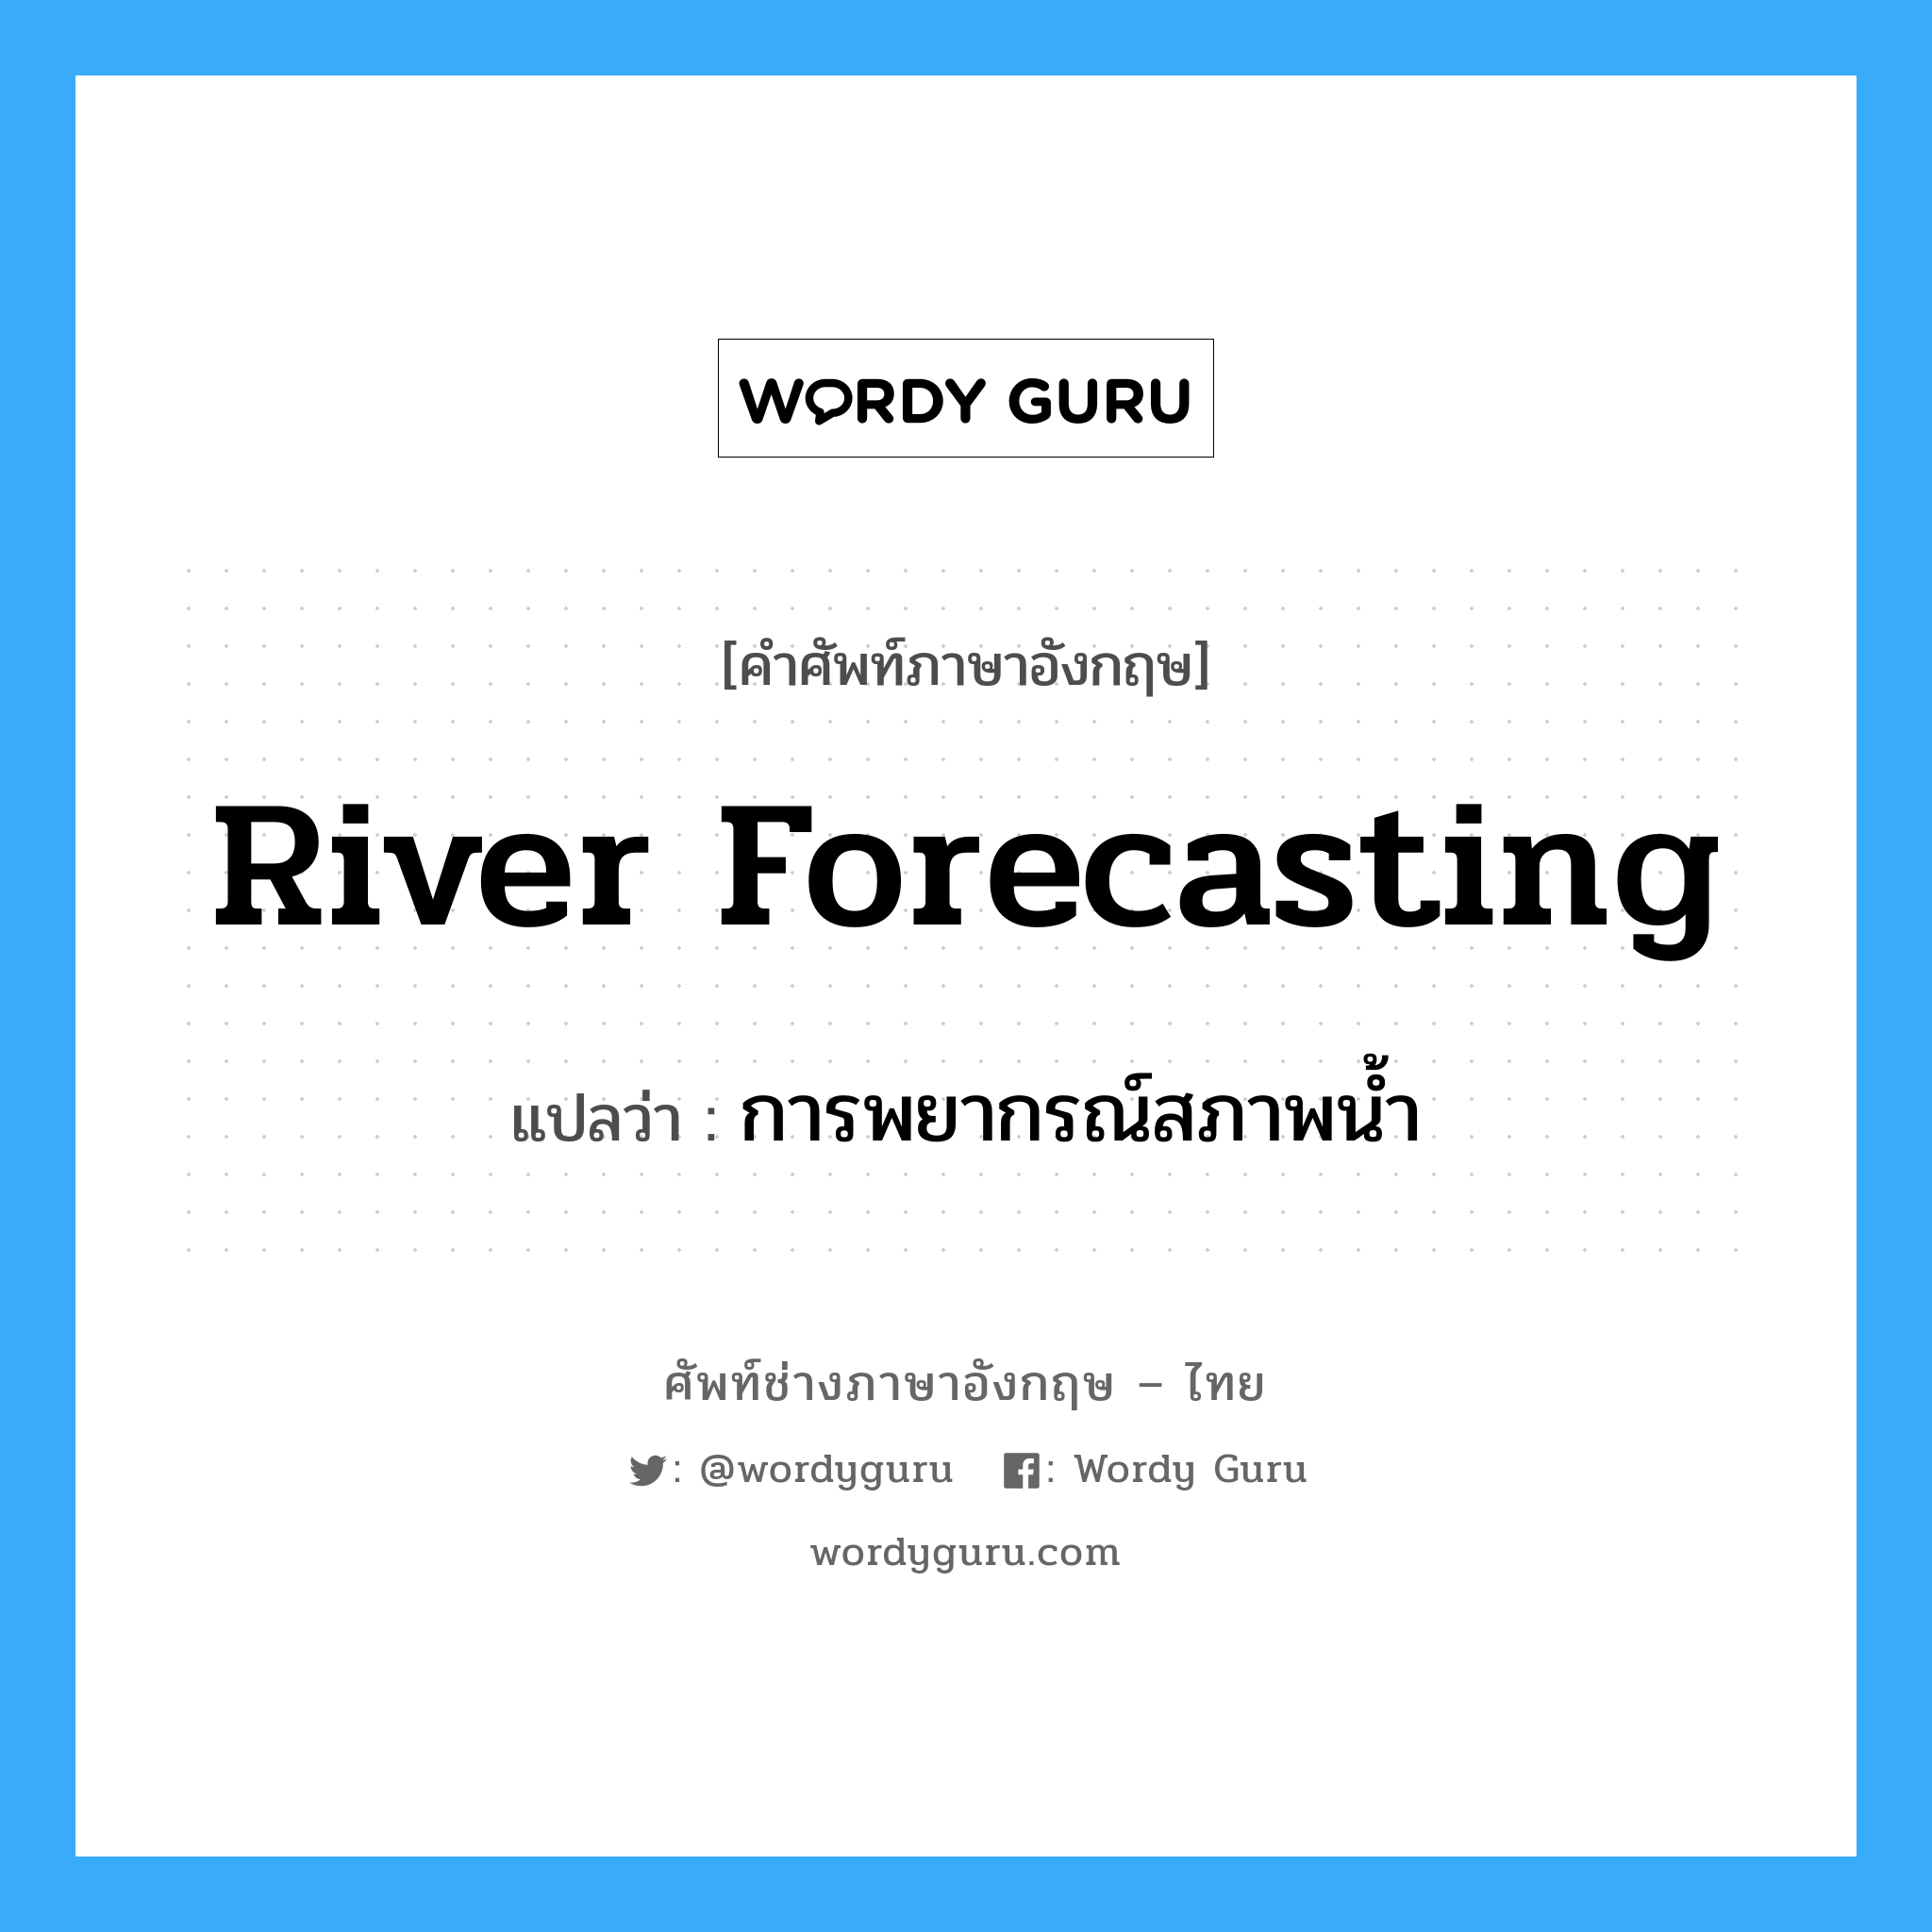 river forecasting แปลว่า?, คำศัพท์ช่างภาษาอังกฤษ - ไทย river forecasting คำศัพท์ภาษาอังกฤษ river forecasting แปลว่า การพยากรณ์สภาพน้ำ